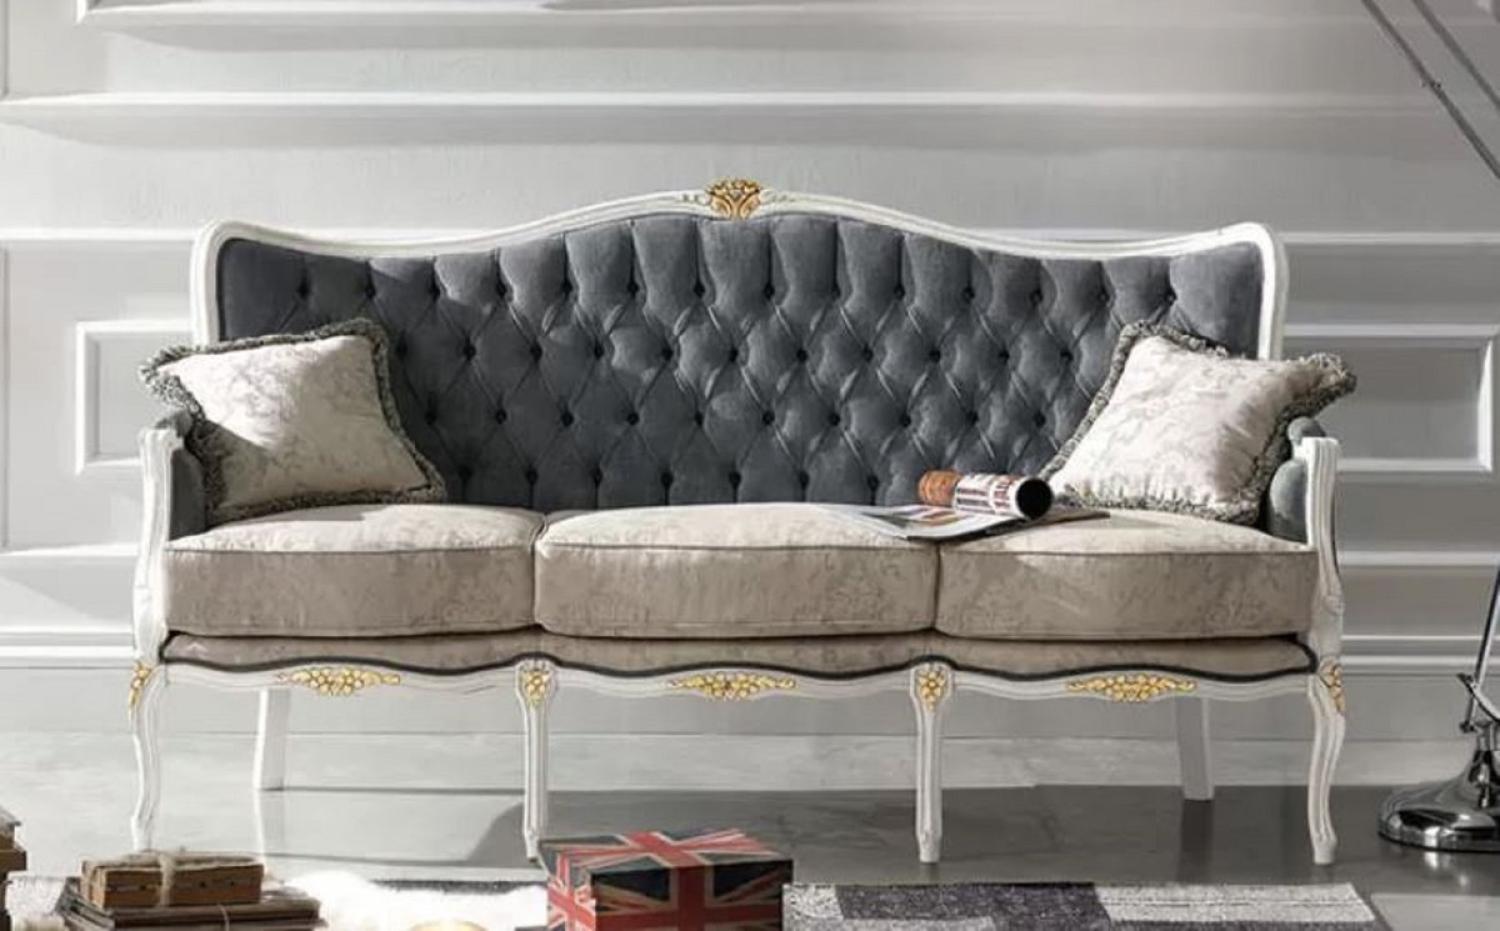 Casa Padrino Luxus Barock Sofa Grau / Hellgrau / Weiß / Gold - Edles Wohnzimmer Sofa mit elegantem Muster und 2 dekorativen Kissen - Barock Möbel - Luxus Qualität - Made in Italy Bild 1